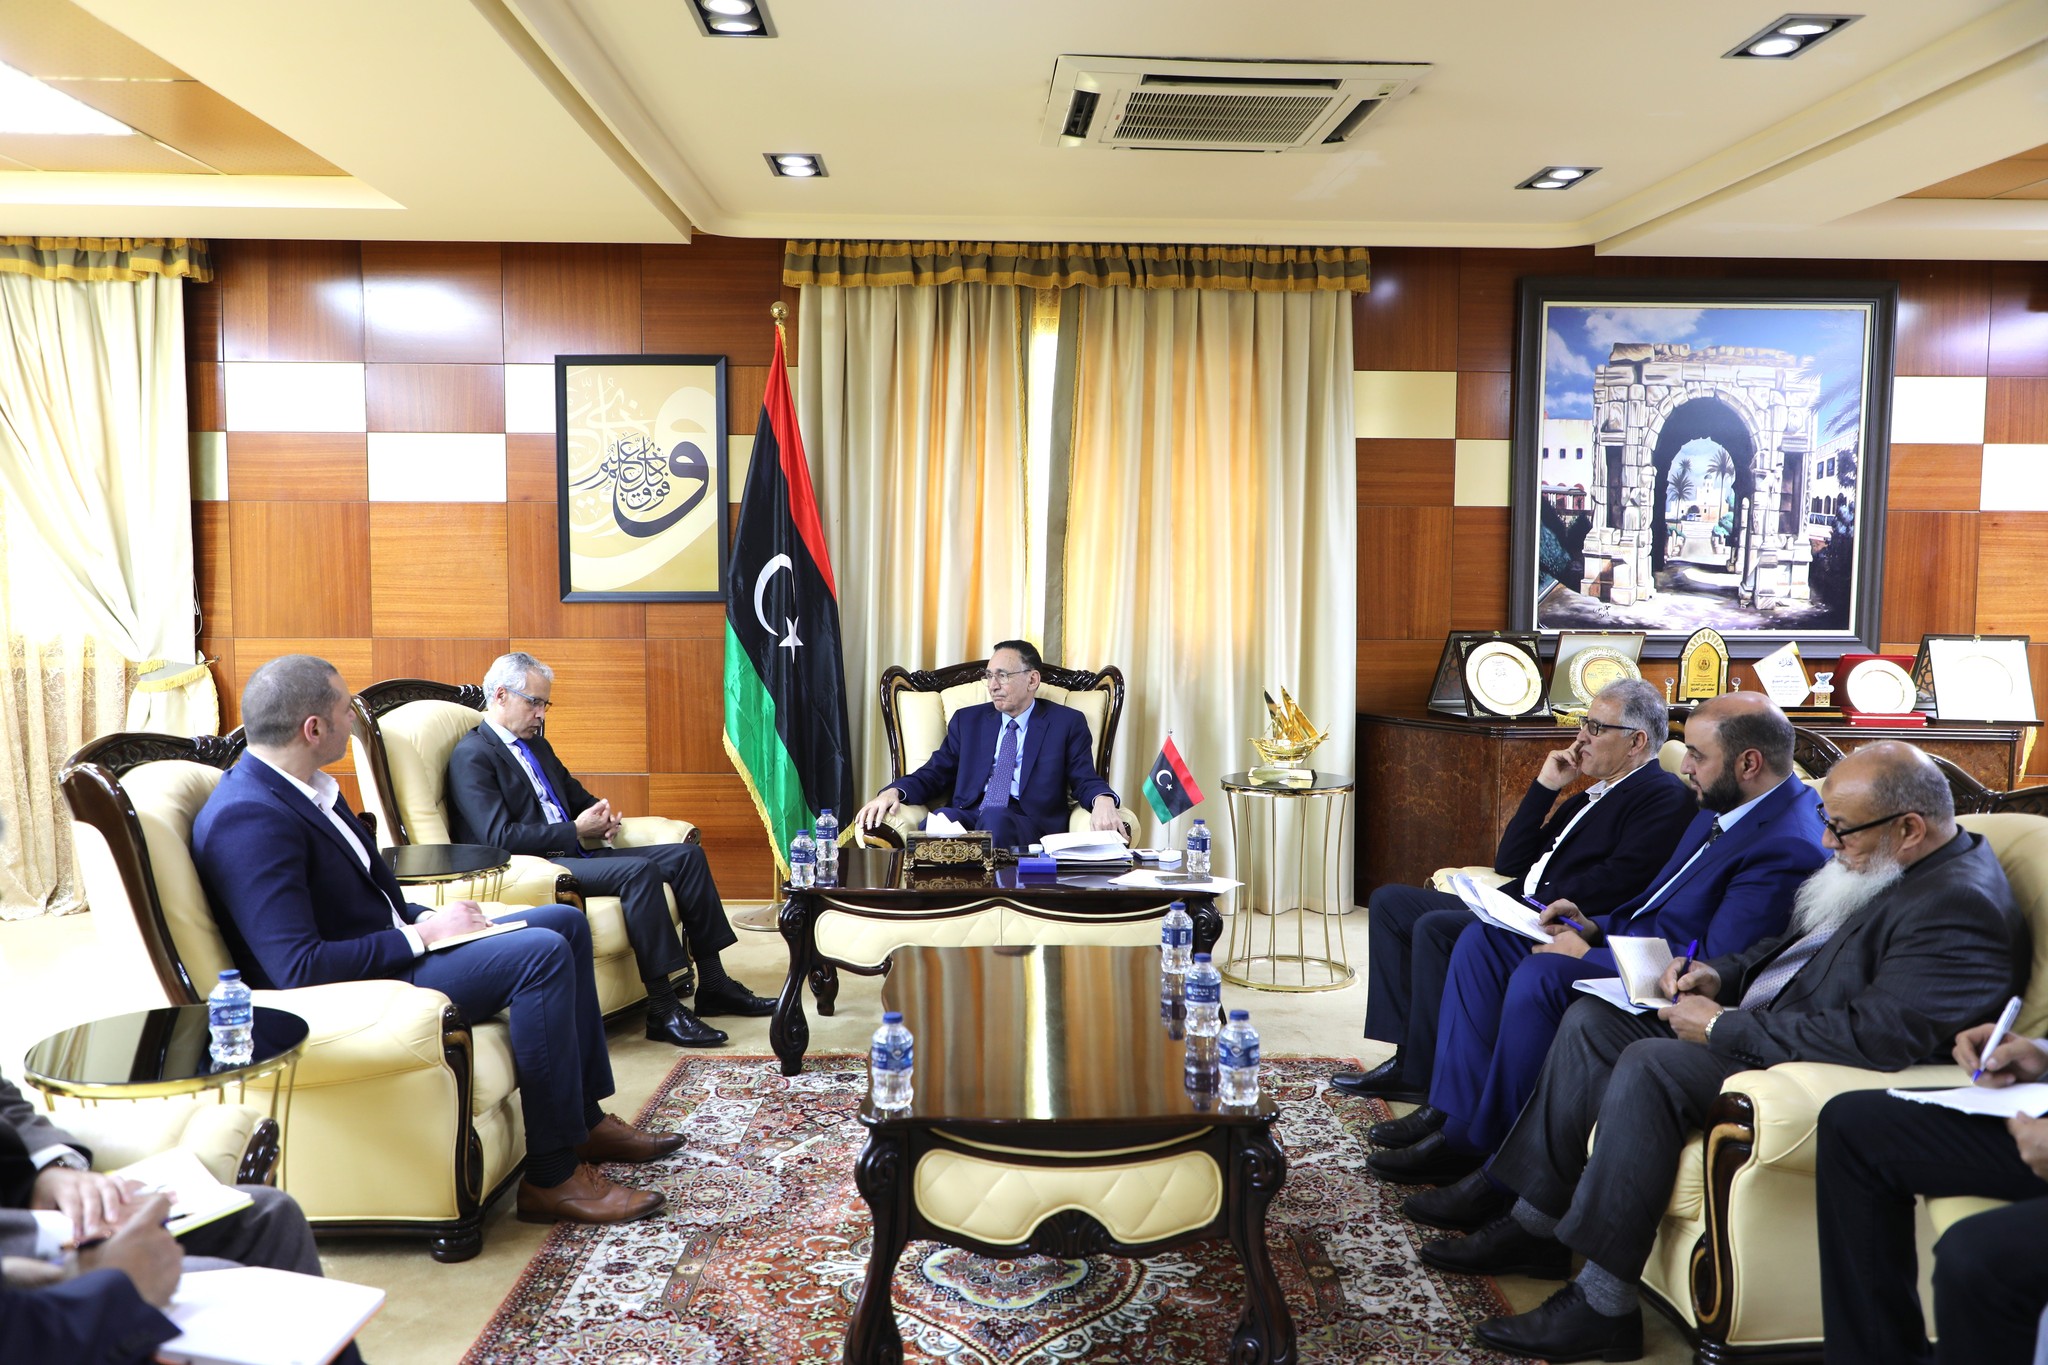 الحويج يدعوا الشركات الفرنسية للاستثمار في ليبيا ويبدي استعداد وزارته لتقديم كافة التسهيلات.